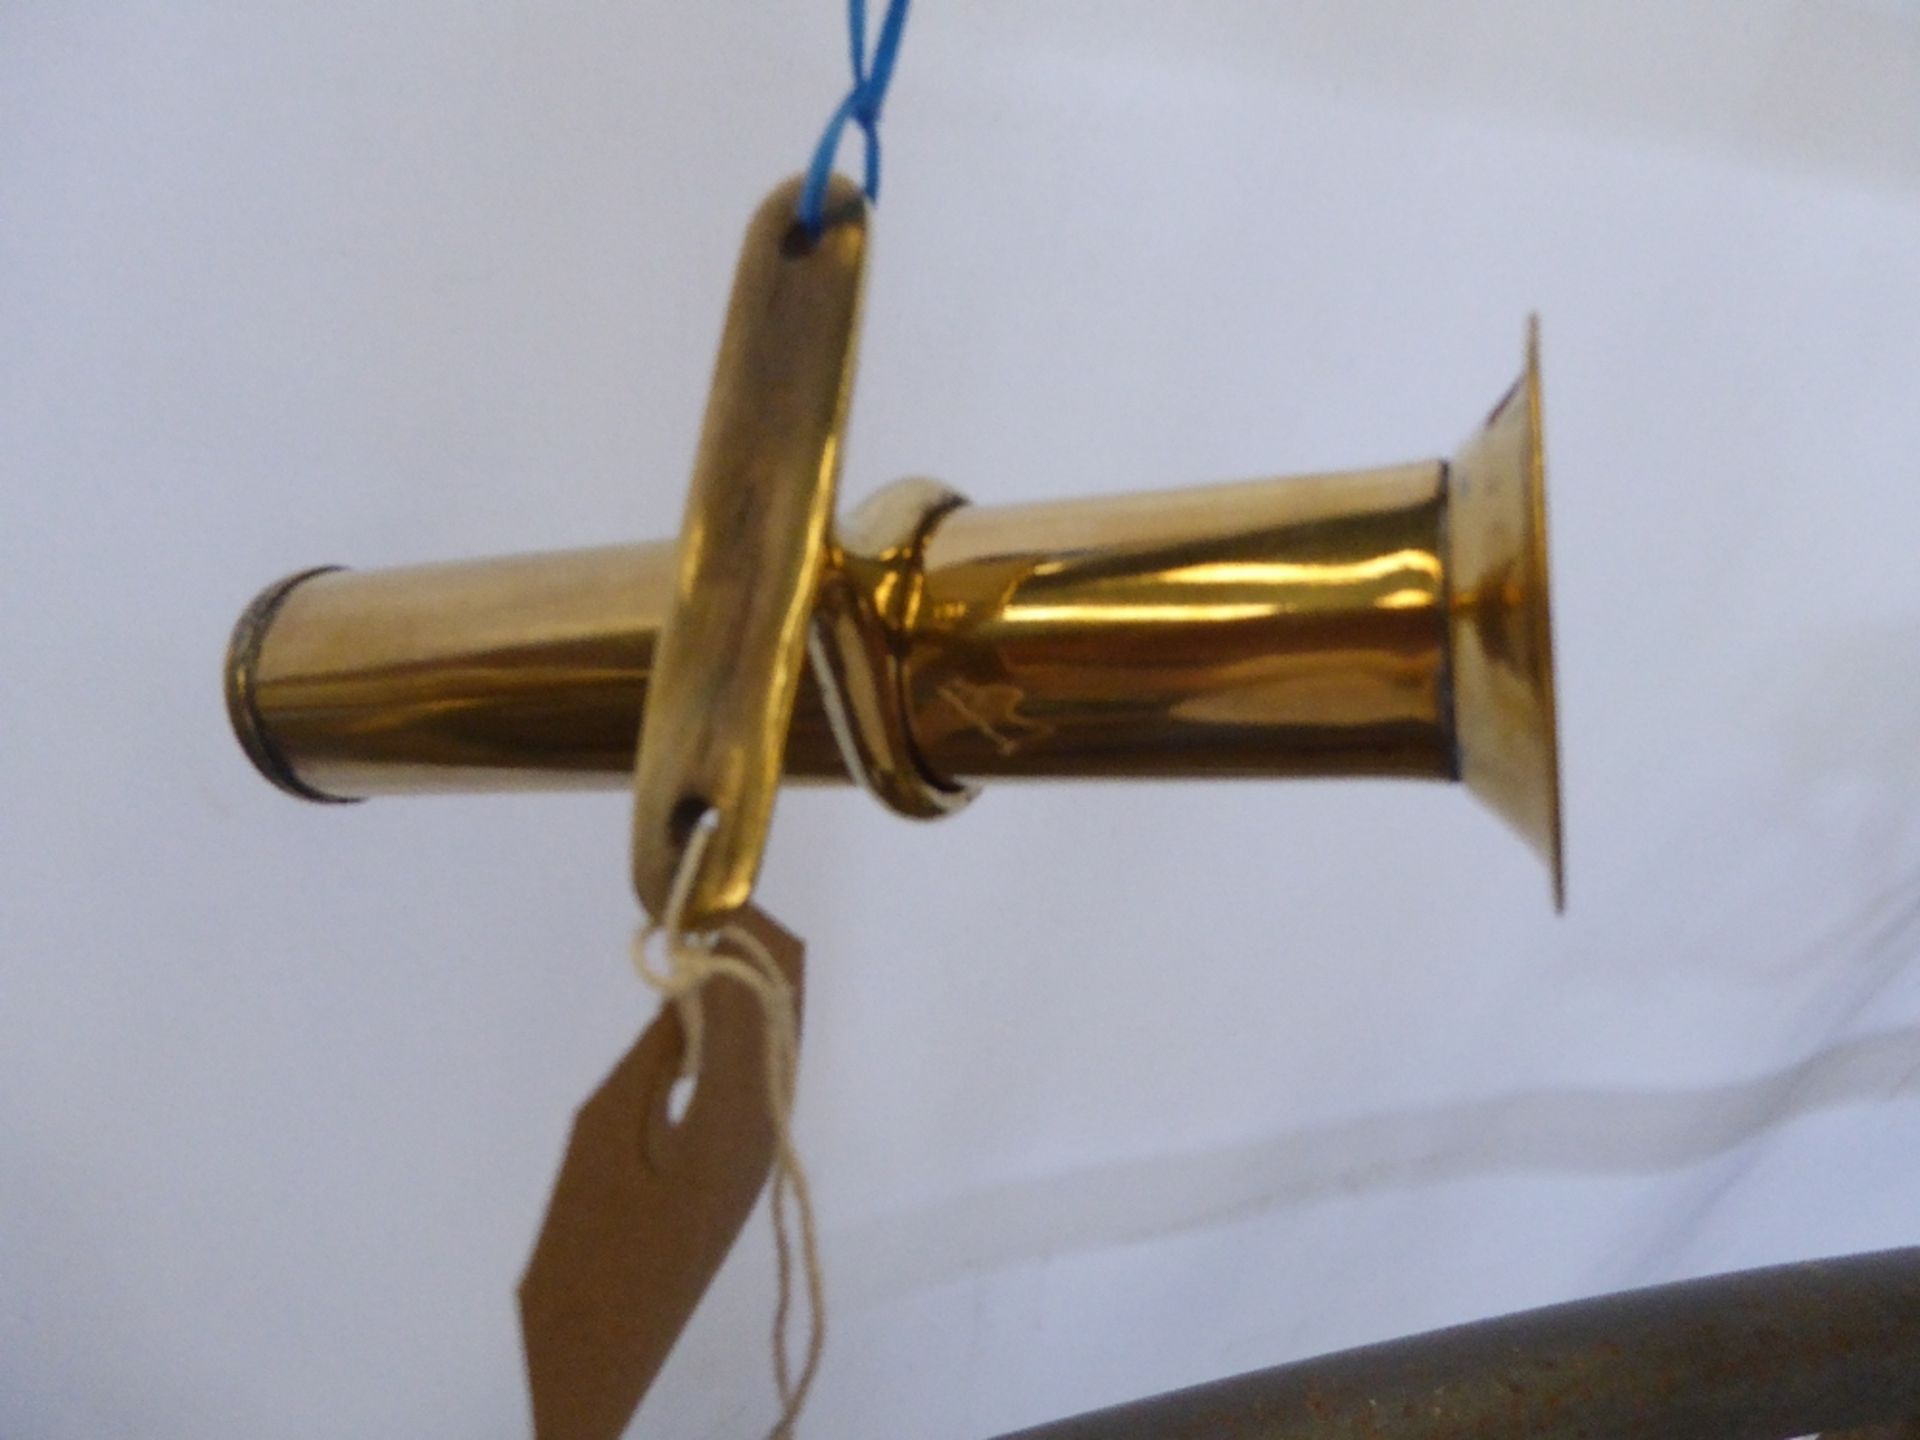 Brass whip holder - carries VAT